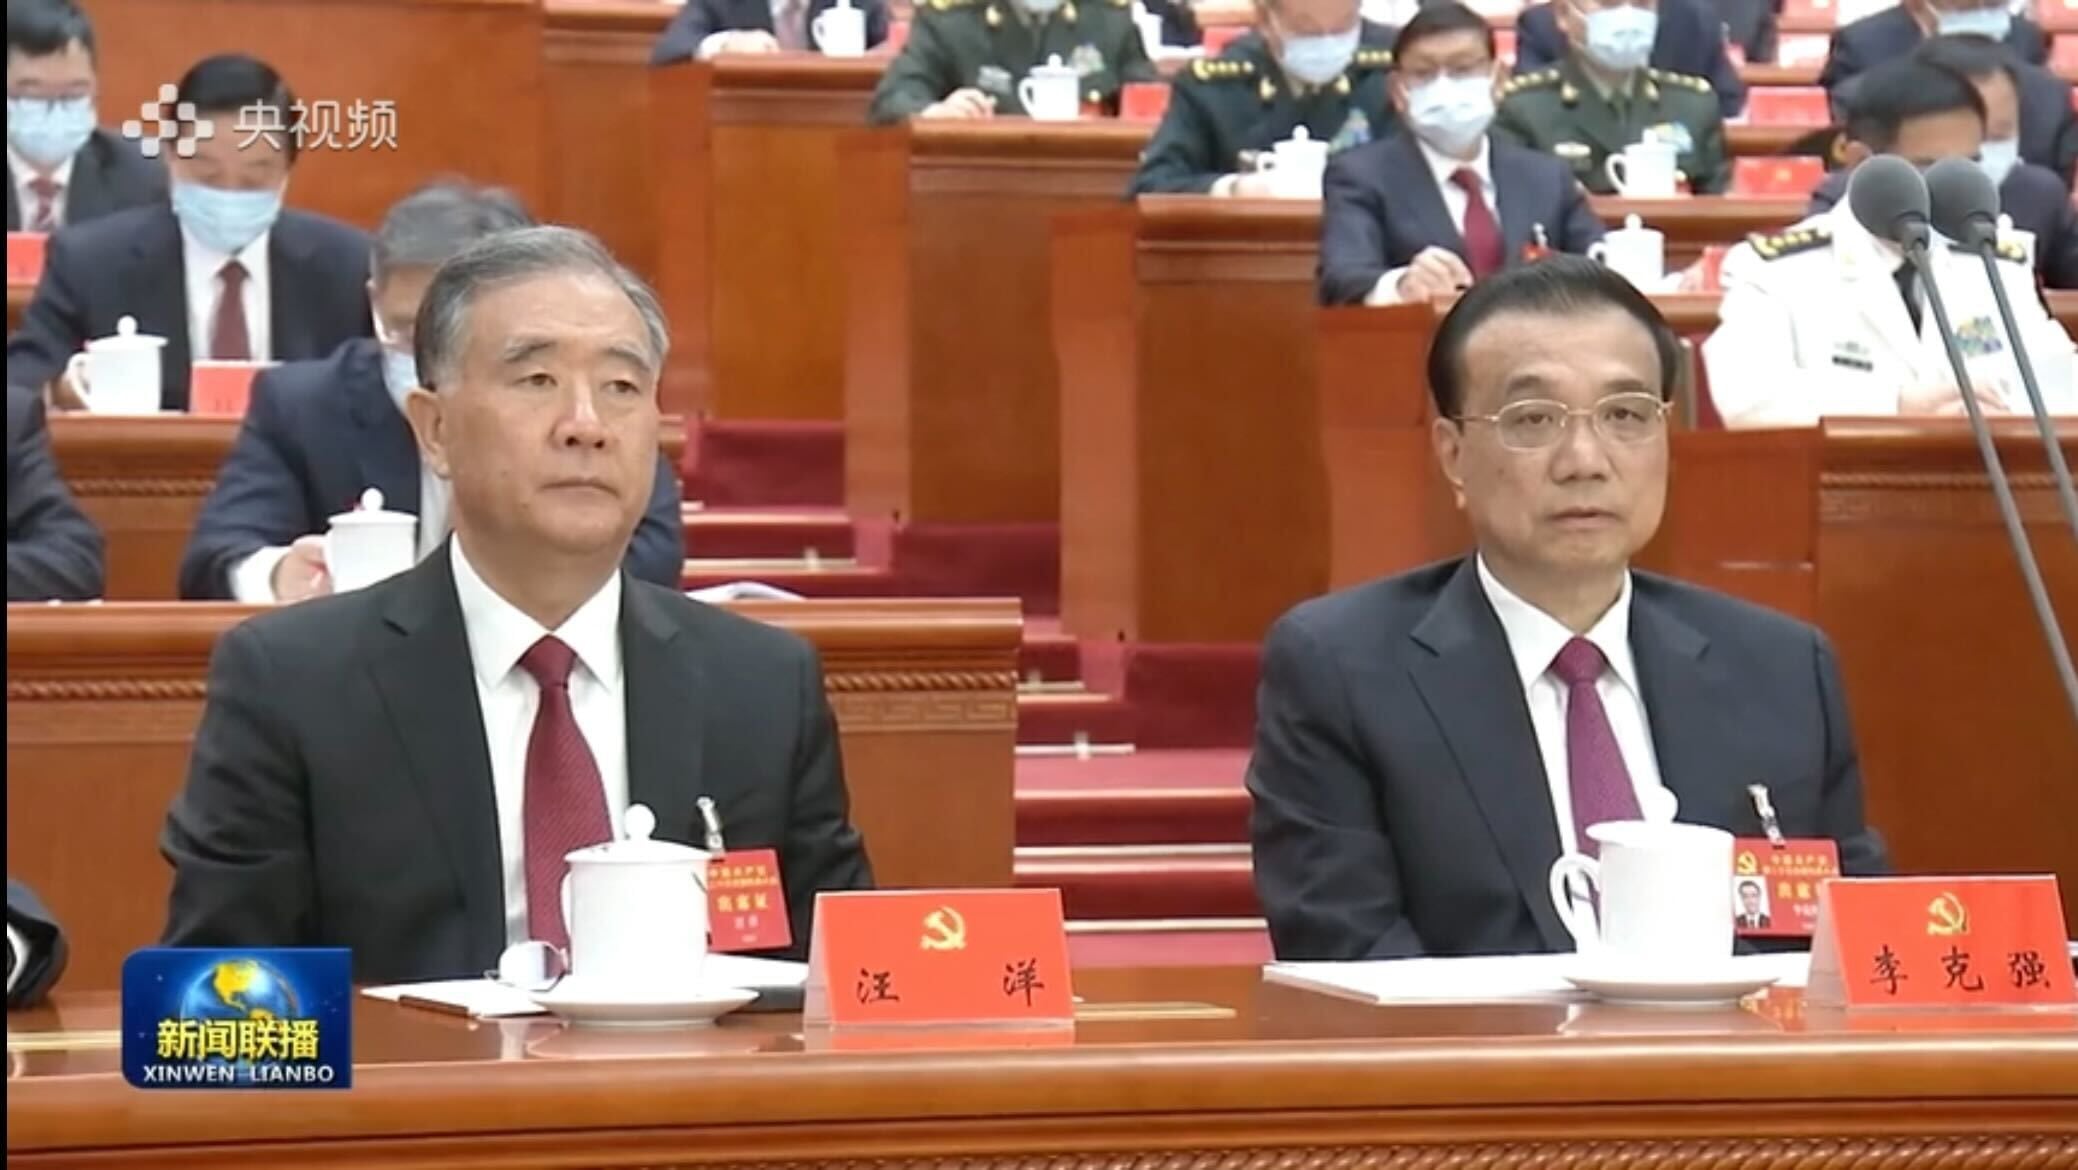 2022년 중국 공산당 20차 당대회 보도 화면. 시진핑 중국 국가주석의 연설을 듣는 리커창(오른쪽) 총리, 왕양 전국인민정치협상회의 주석의 모습이 한 화면에 잡혔다./중국 CCTV방송